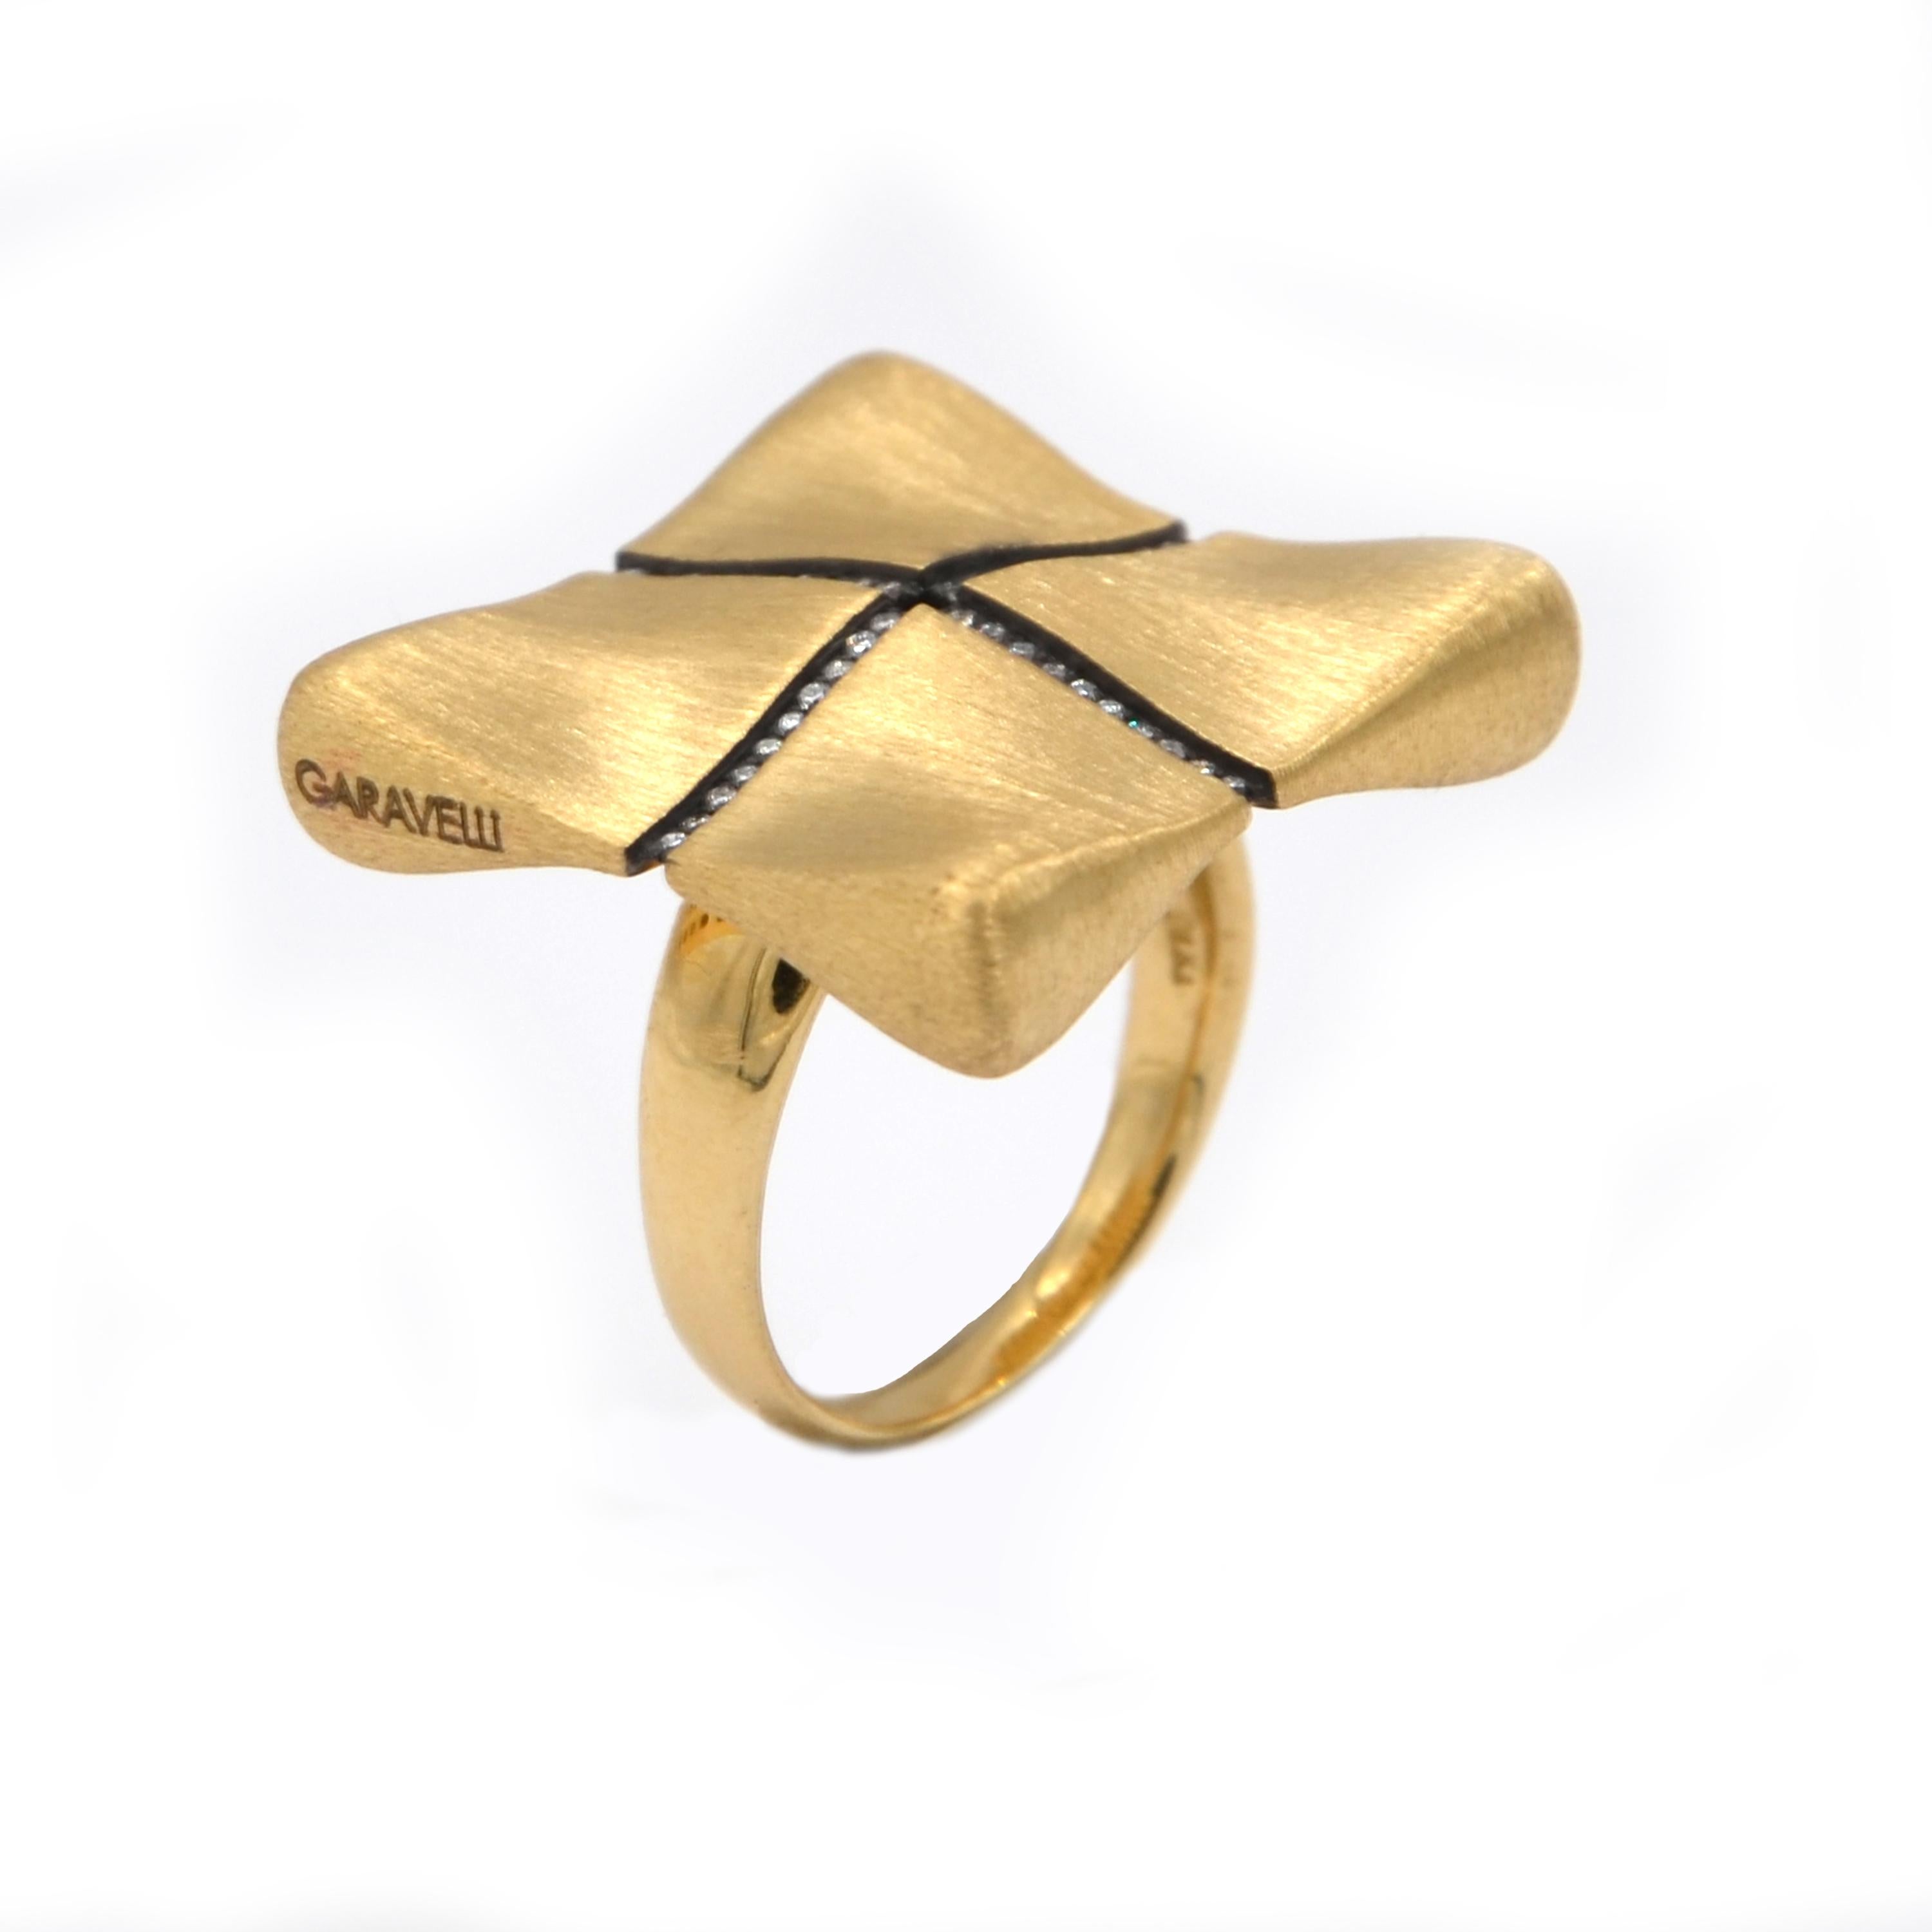 Garavelli 18 Karat Rose Gold White Diamonds Award Collection Ring 2